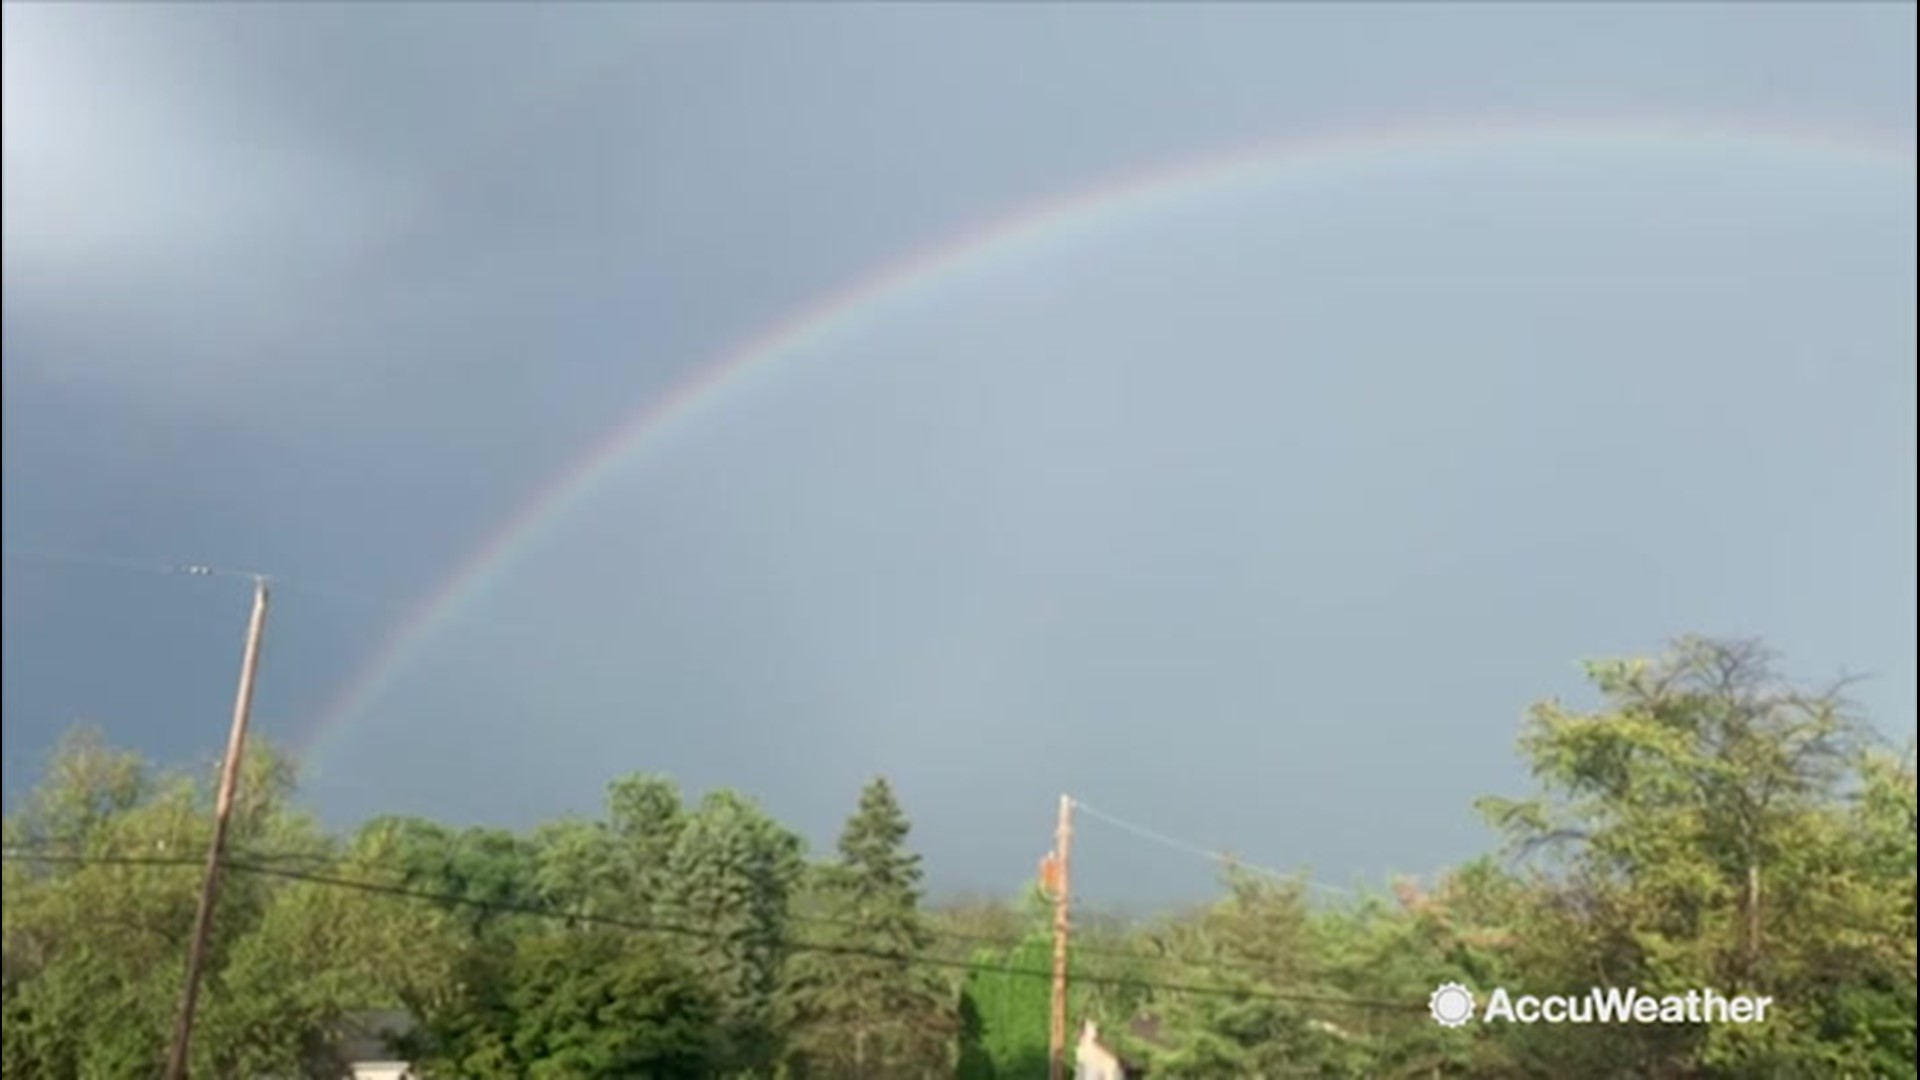 A rainbow, and faint double rainbow, could be seen over Pennsburg, Pennsylvania, on Aug. 18.